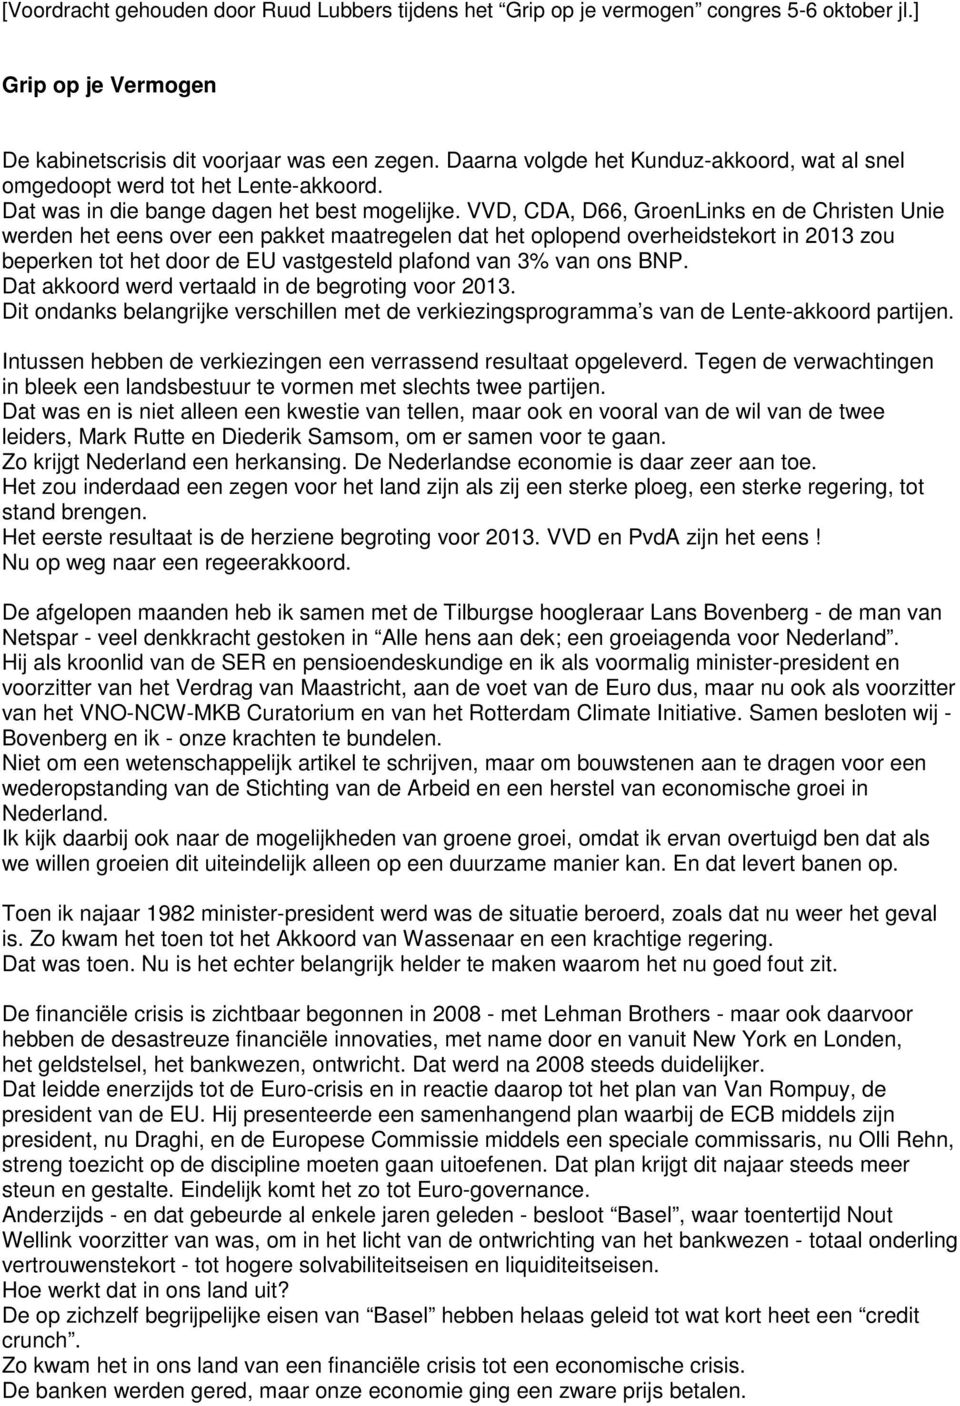 VVD, CDA, D66, GroenLinks en de Christen Unie werden het eens over een pakket maatregelen dat het oplopend overheidstekort in 2013 zou beperken tot het door de EU vastgesteld plafond van 3% van ons